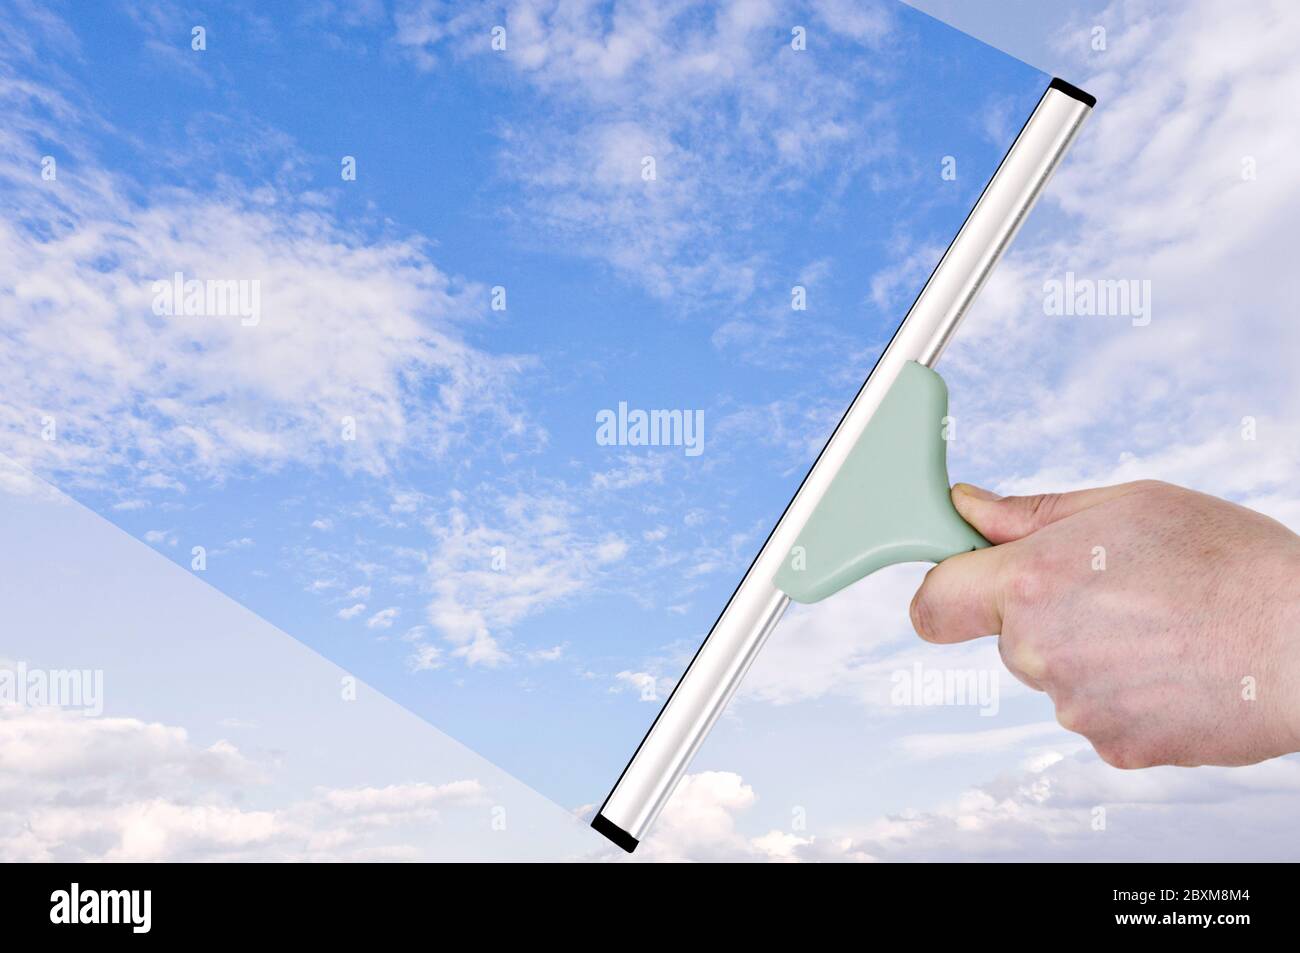 Transparenzkonzept. Hand mit einem Rakel, der dumpfen Himmel in Blau verwandelt Stockfoto